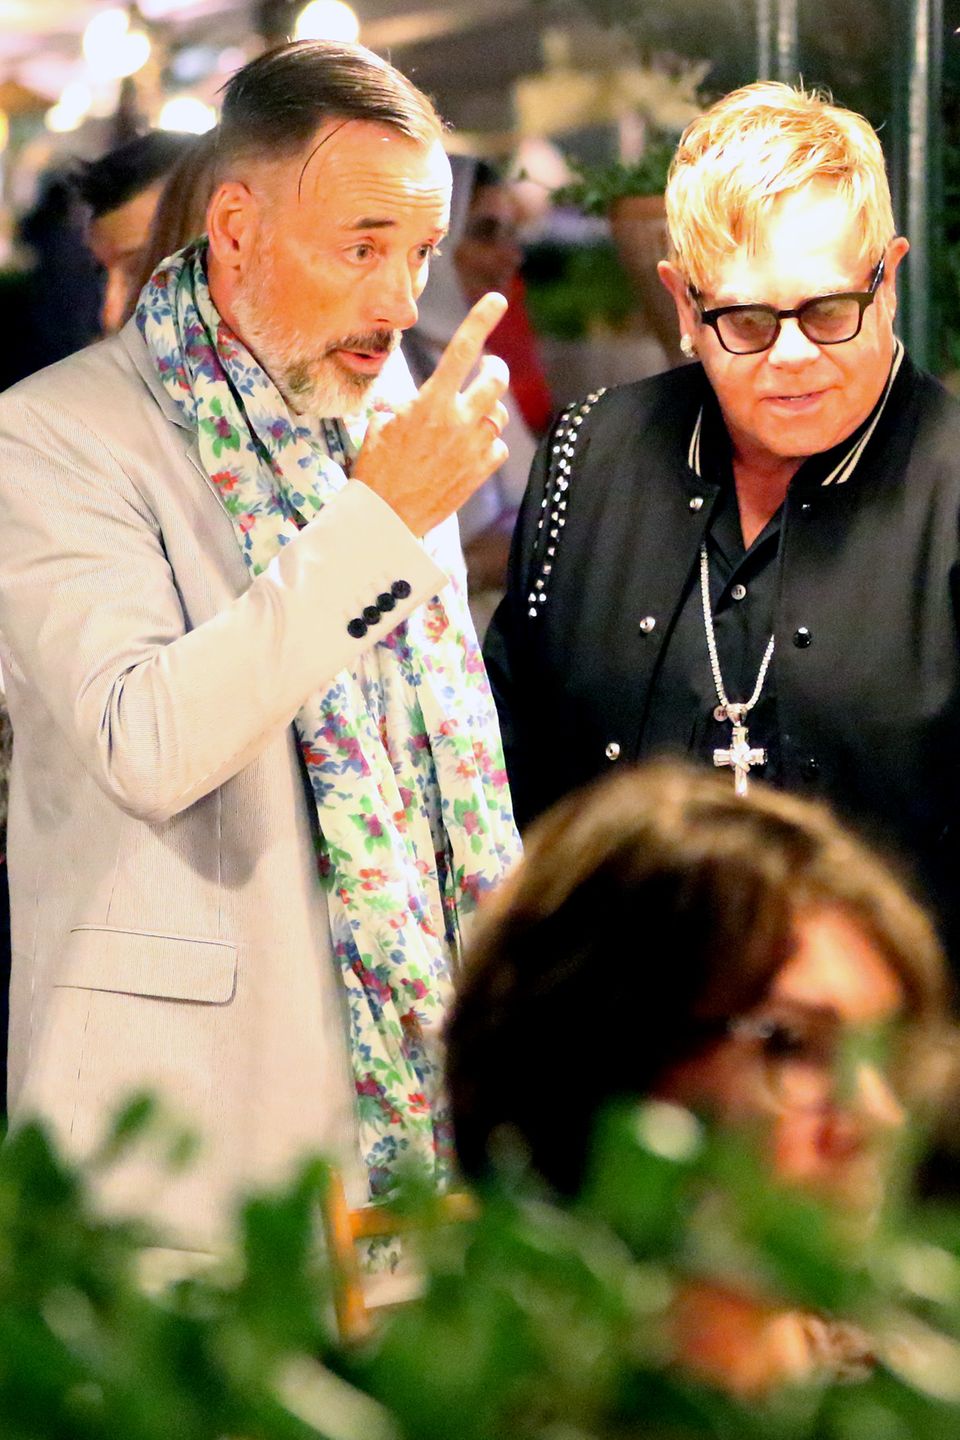 27. August 2016: Was auf den ersten Blick nach Zoff bei David Furnish und Elton John aussieht, entpuppt sich als ein spannender, diskussionsreicher Dinner-Abend mit Neil Patrick Harris und Rula Jebreal in Portofino.